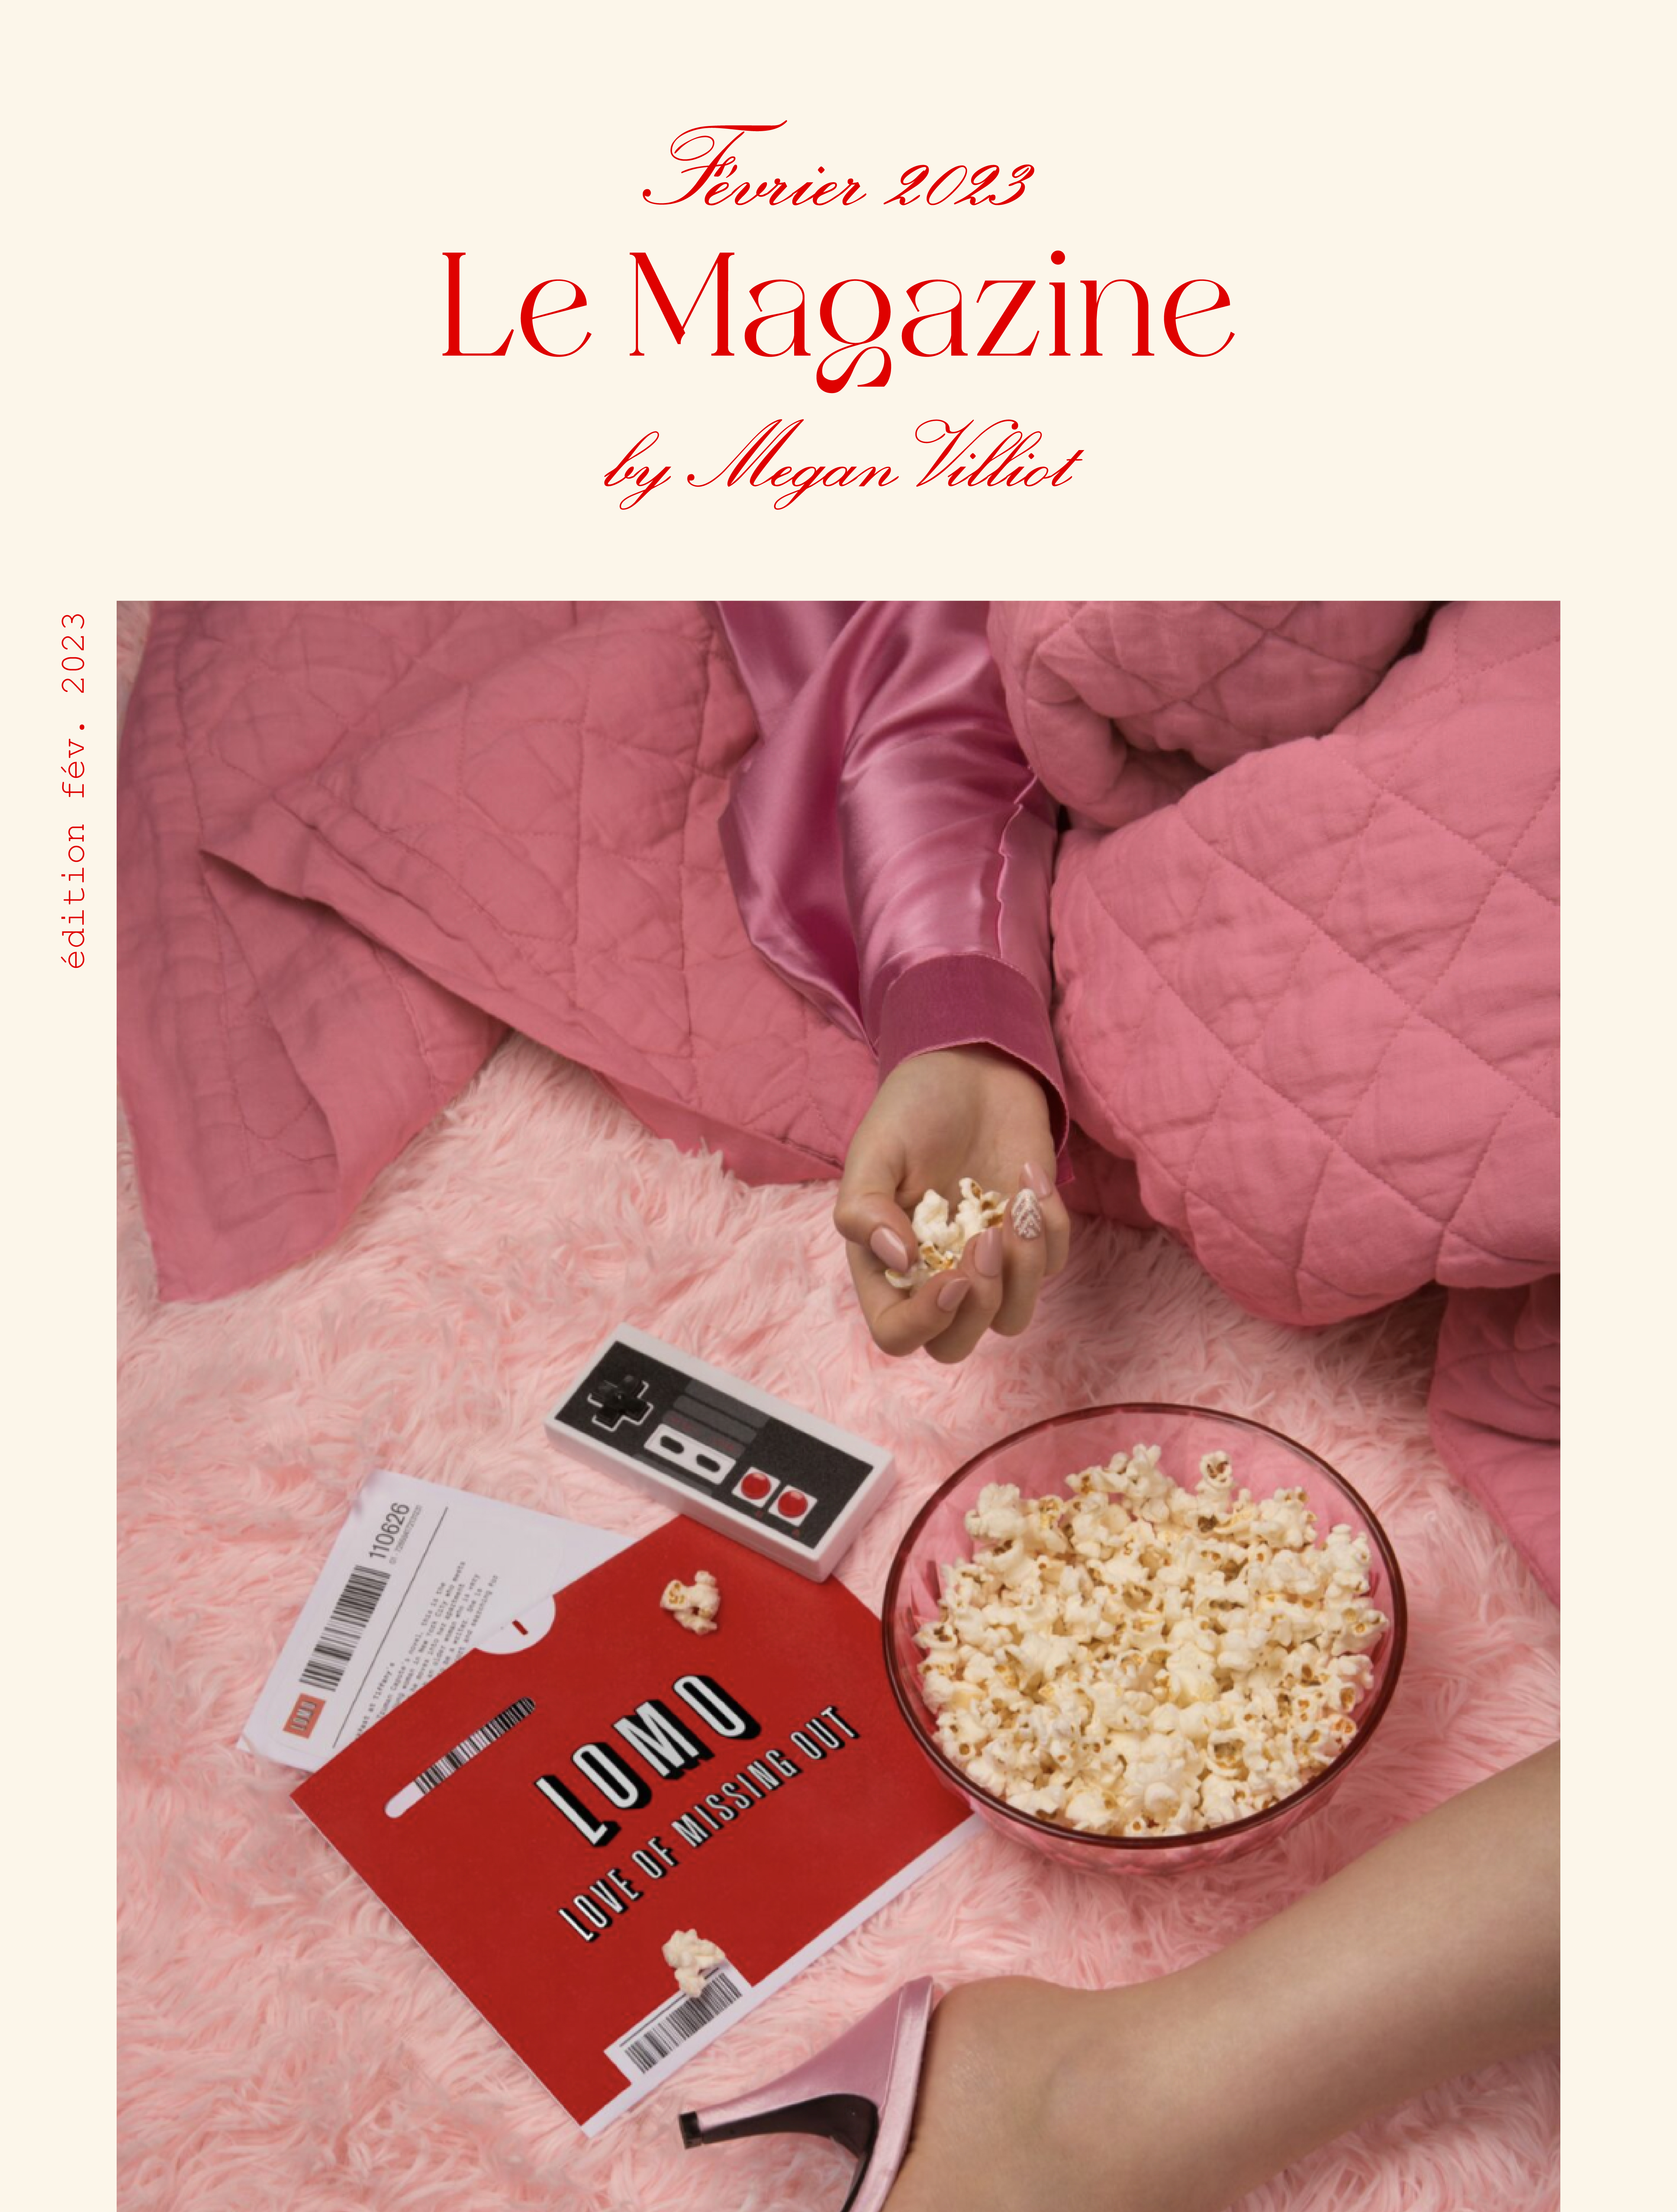 Le Magazine by Megan Villiot – Février